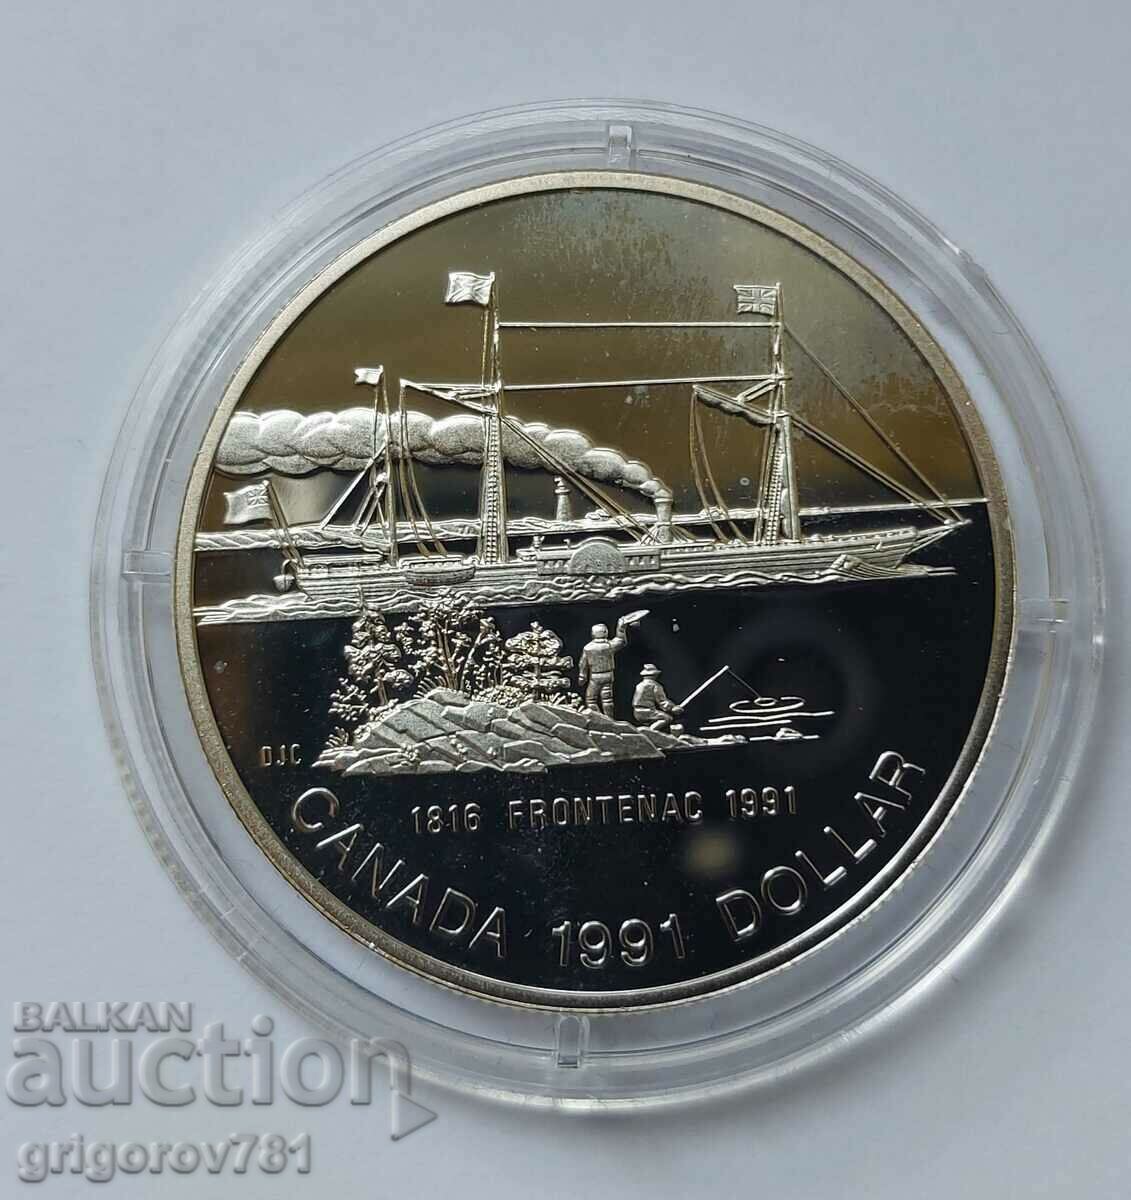 1 dolar de argint Canada 1991 Proof - Monedă de argint